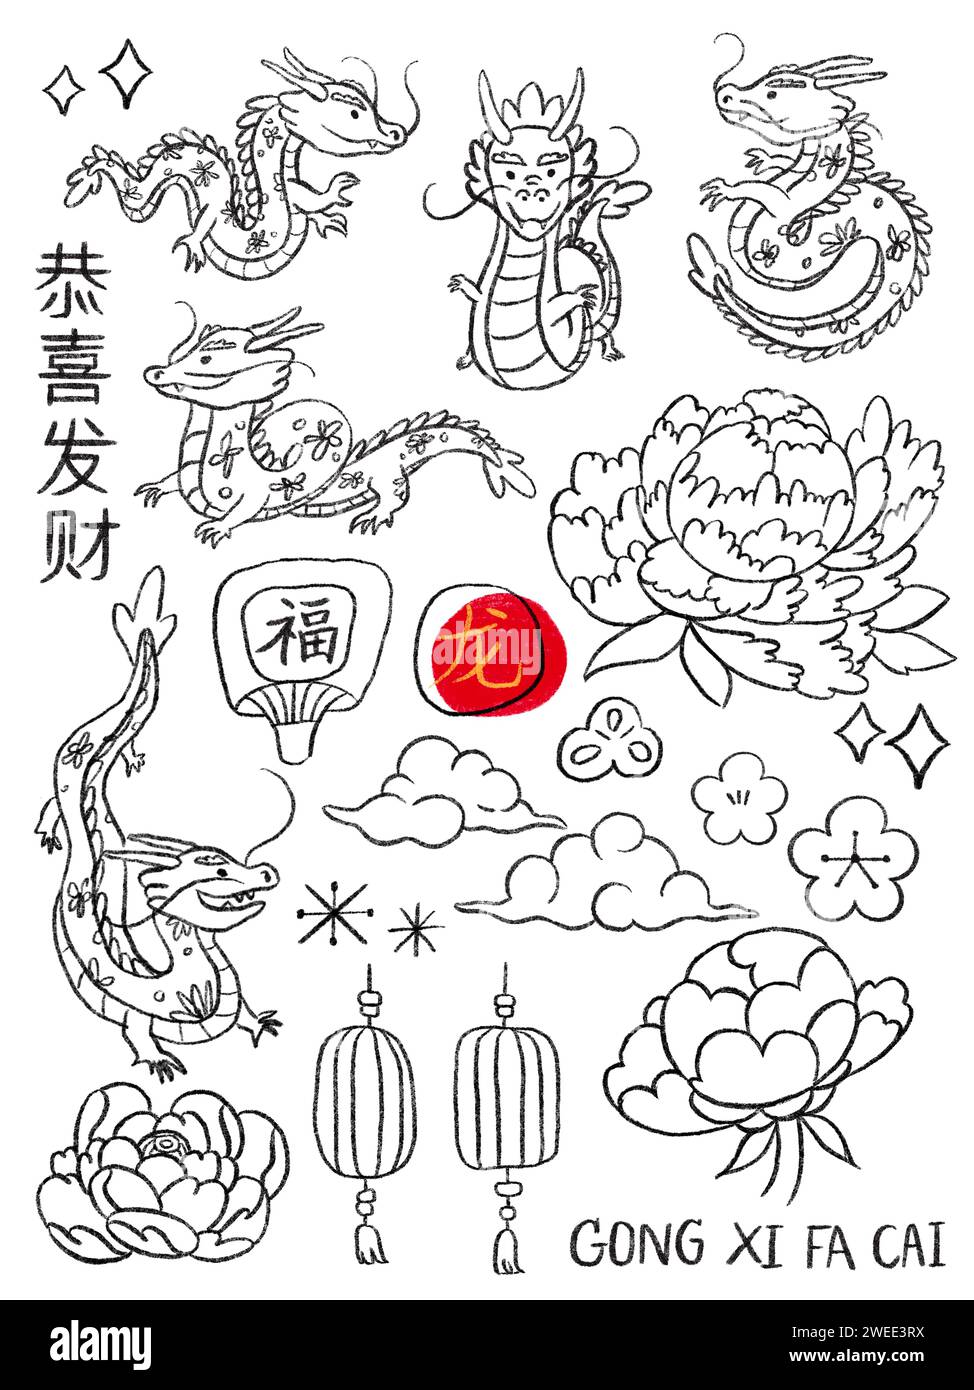 Chinesische Neujahrsdekoration Element Linie Art Umriss Zeichnung auf weißem Hintergrund, fremde Textübersetzung als Wunsch vergrößern Sie Ihren Reichtum, reich und d Stockfoto